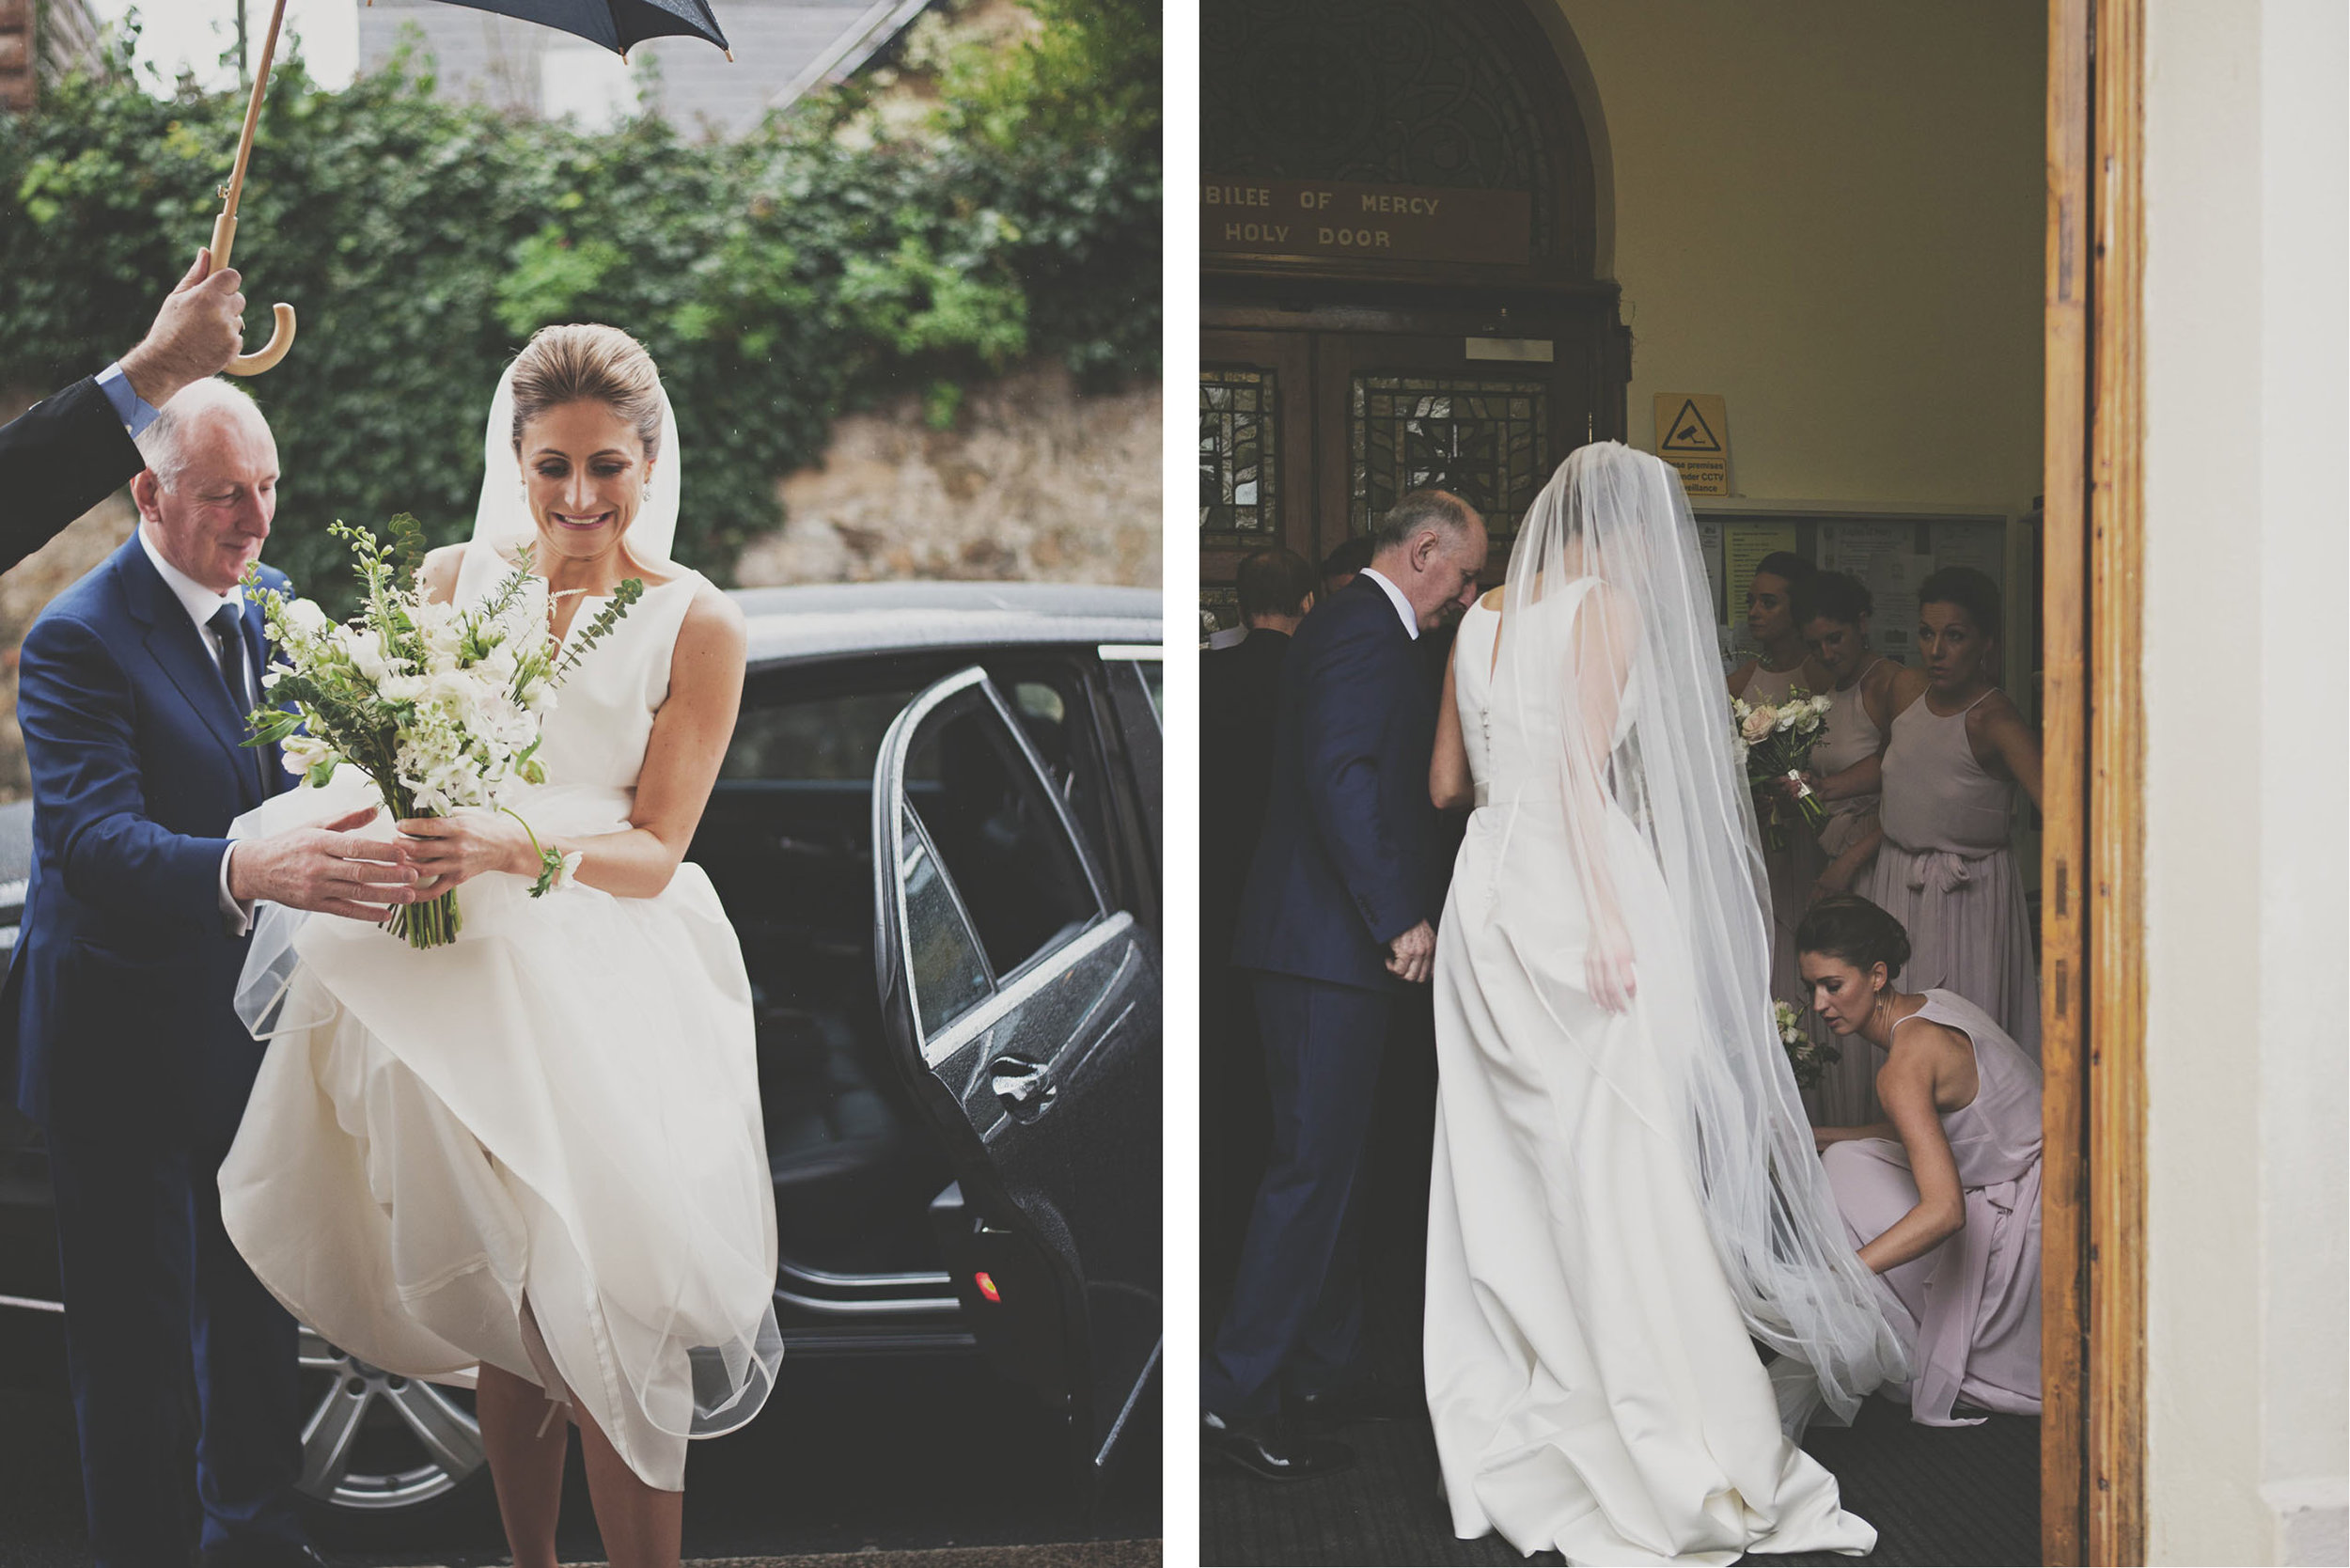 Gemma & Olly's Royal St. George Wedding 037.jpg